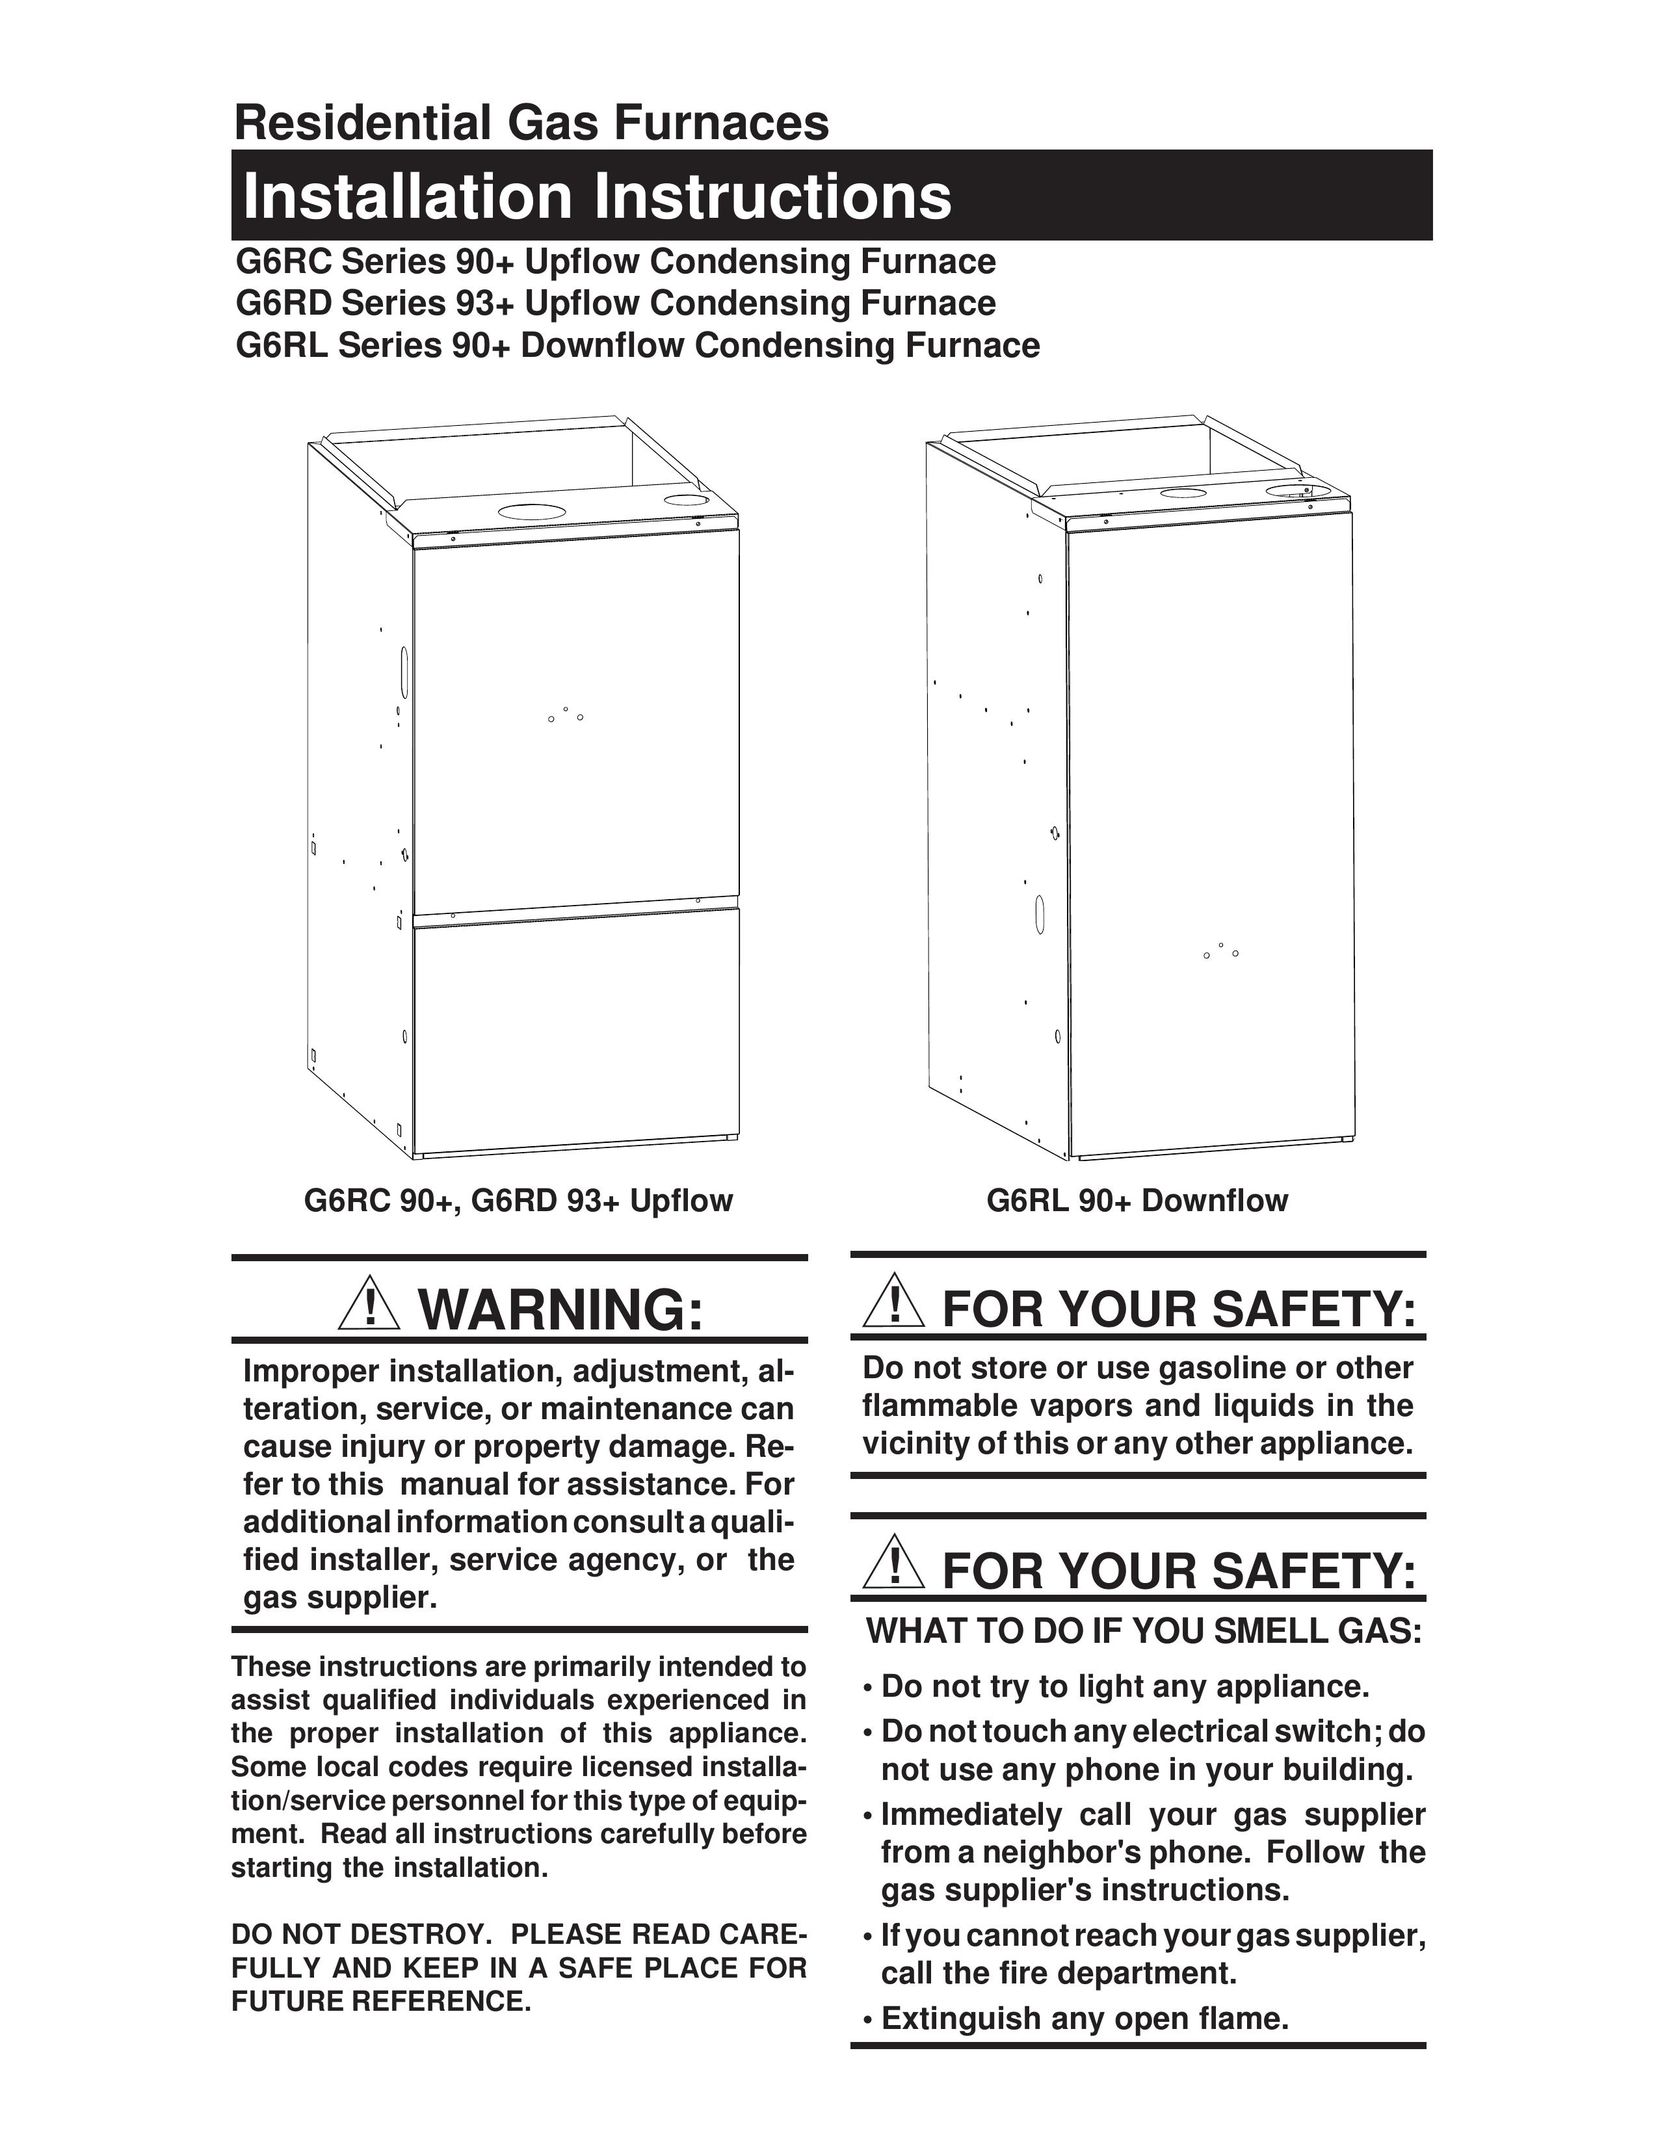 Nordyne G6RD 93+ Furnace User Manual